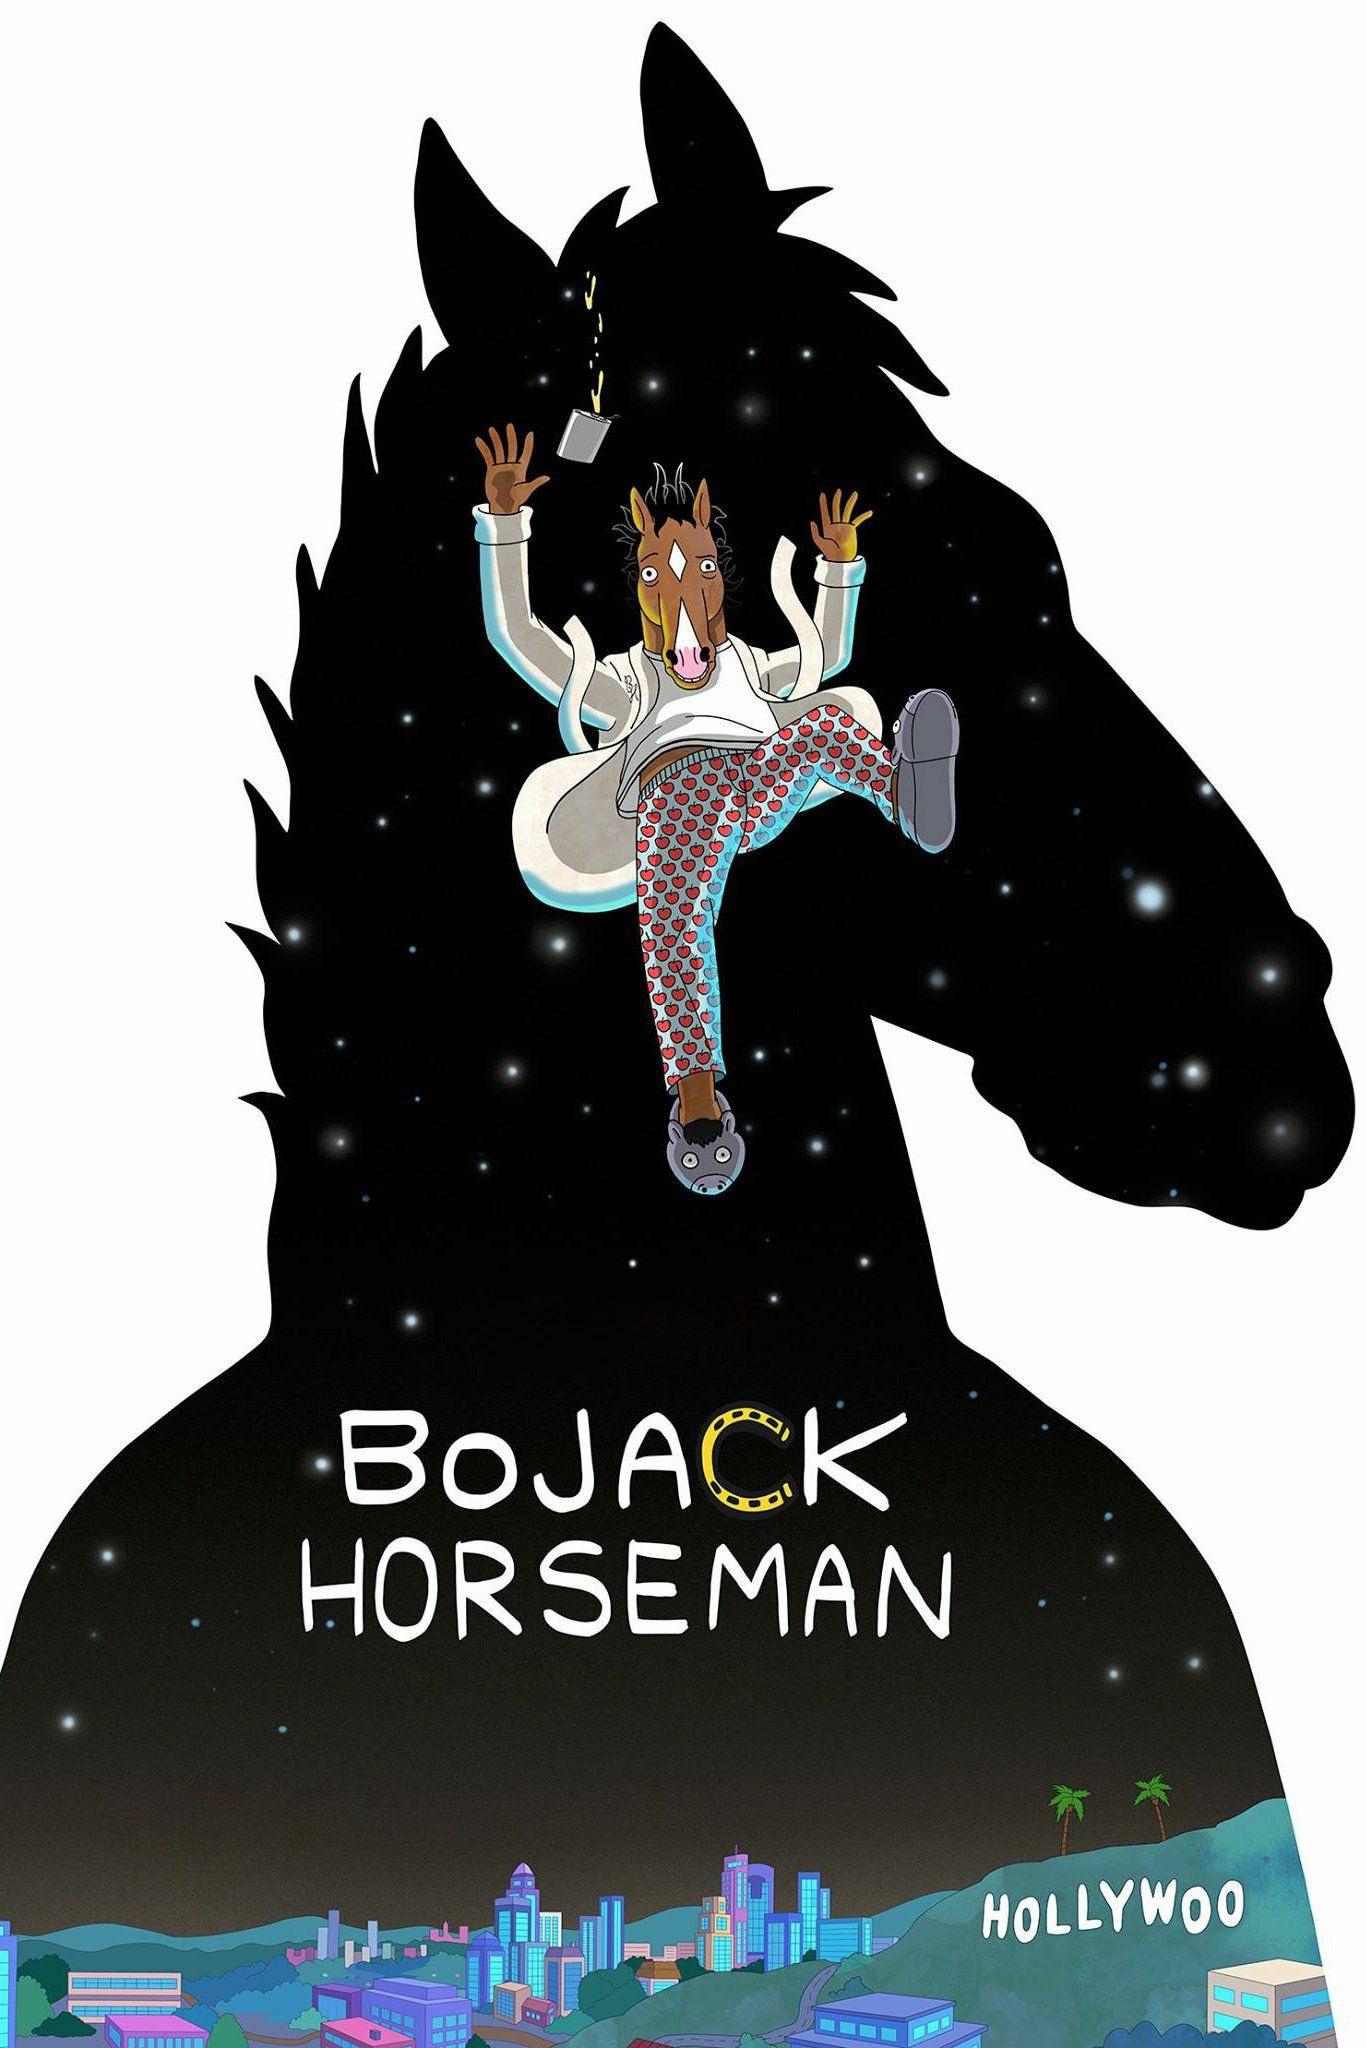 Bojack horseman wallpaper image